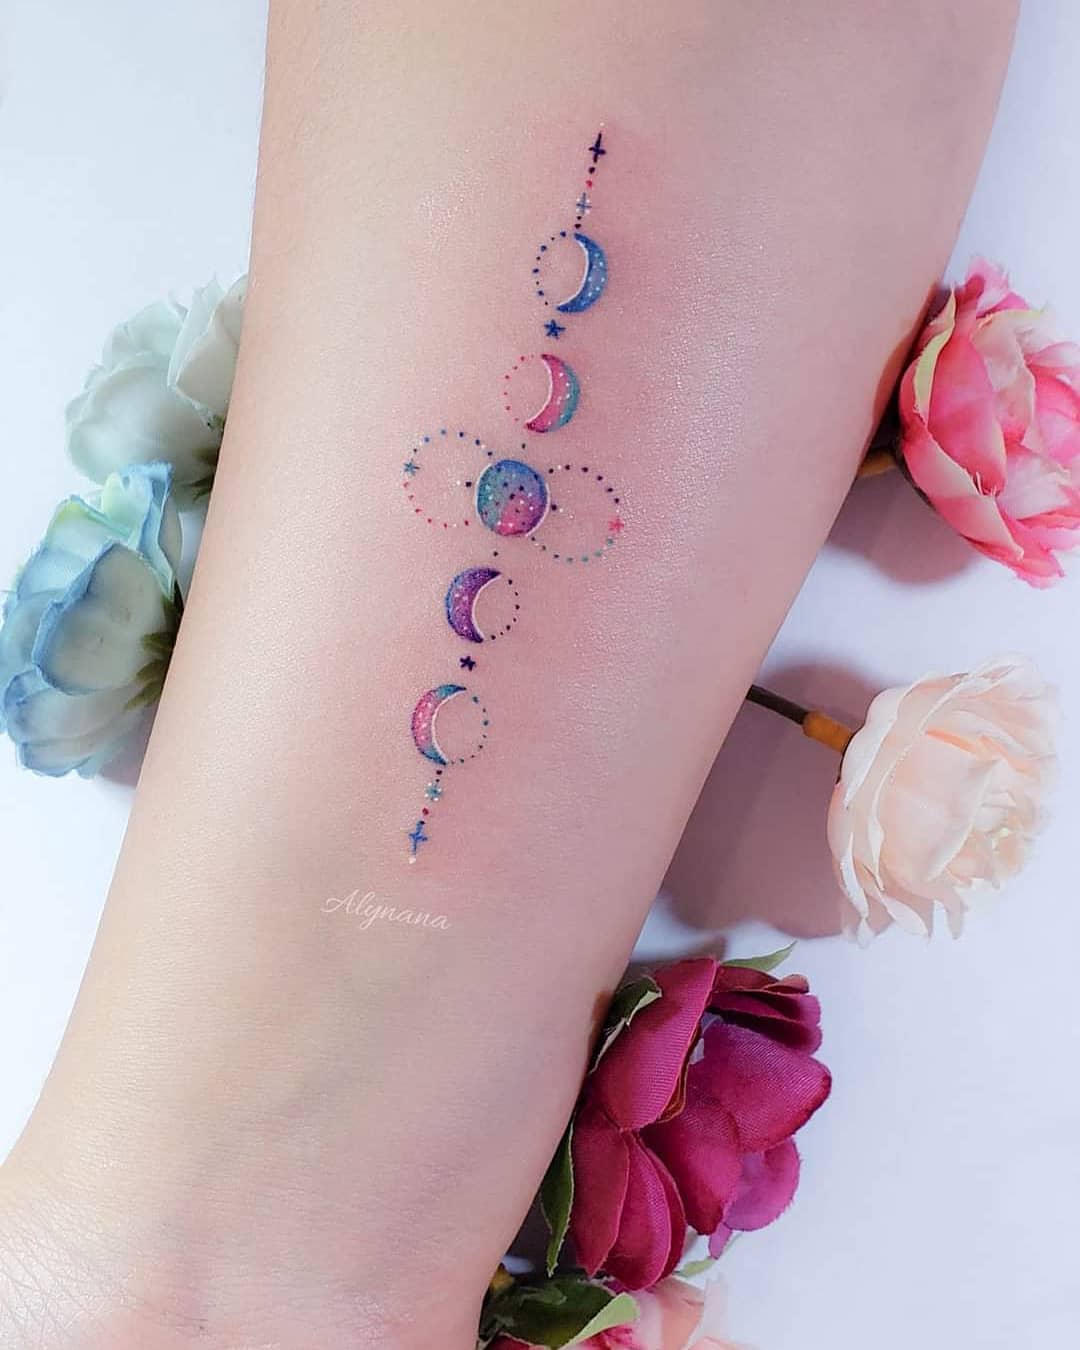 157 Delicati tatuaggi colorati dell'artista Alynana Moon Phases con piccoli punti e stelle sull'avambraccio